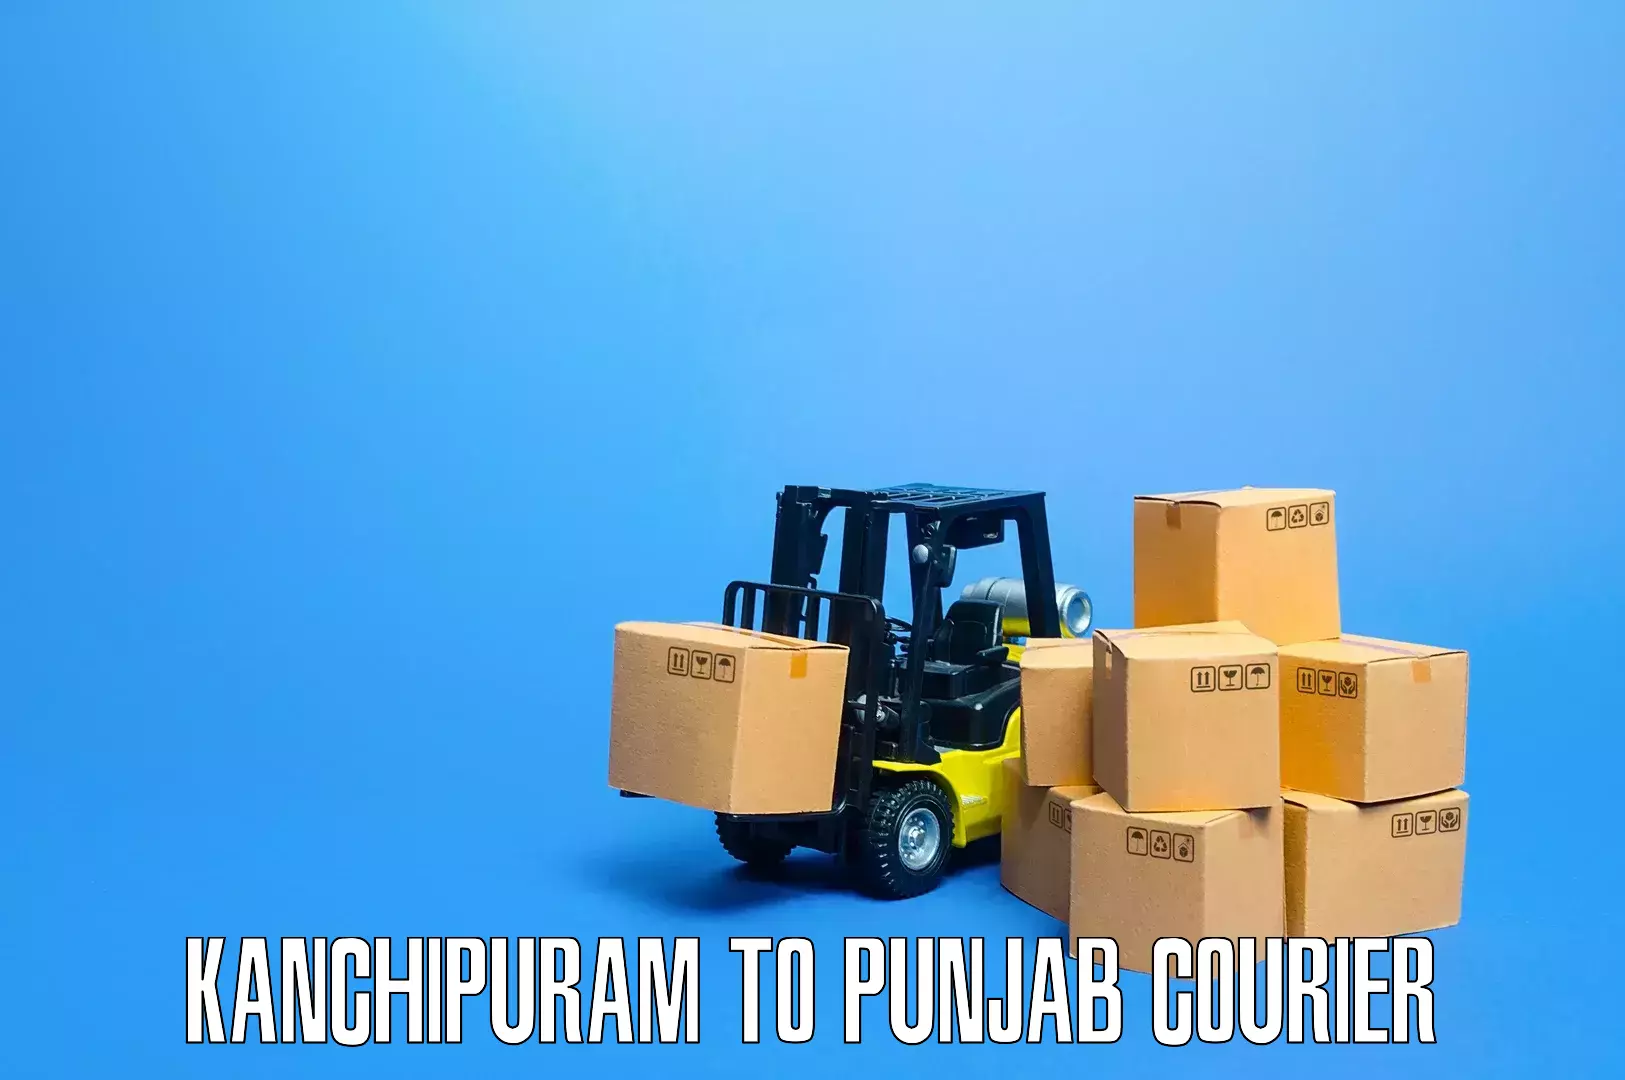 Furniture moving service Kanchipuram to Punjab